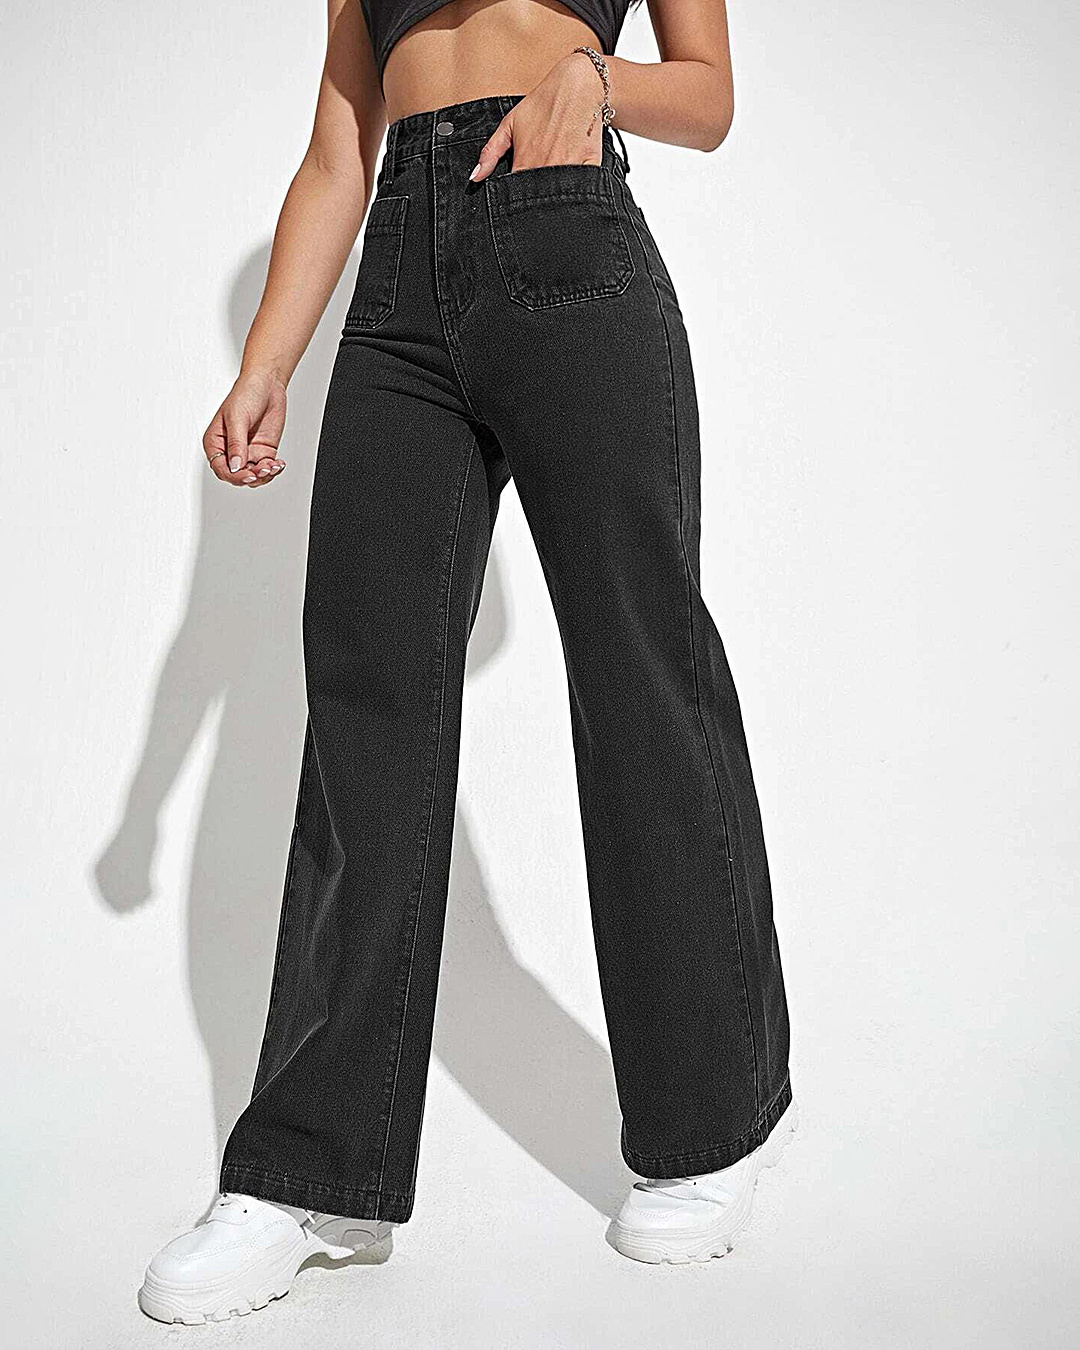 Buy Women's Black Jeans Online at Bewakoof